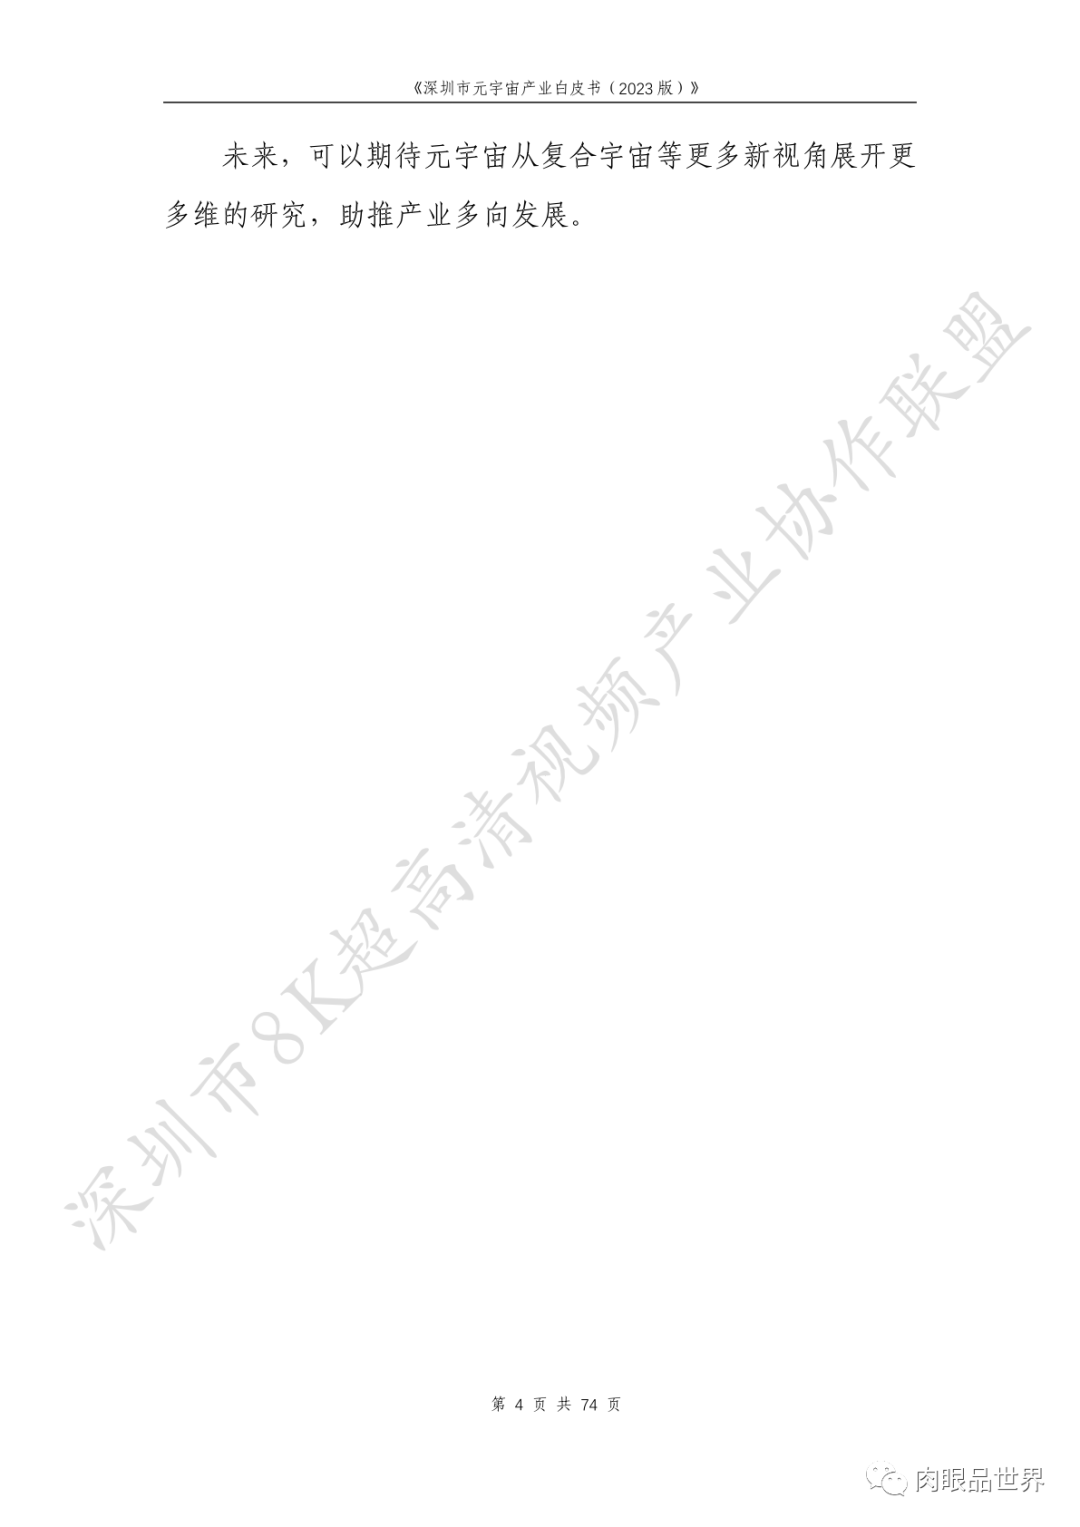 深圳市元宇宙产业白皮书（2023版附下载）_架构师_20